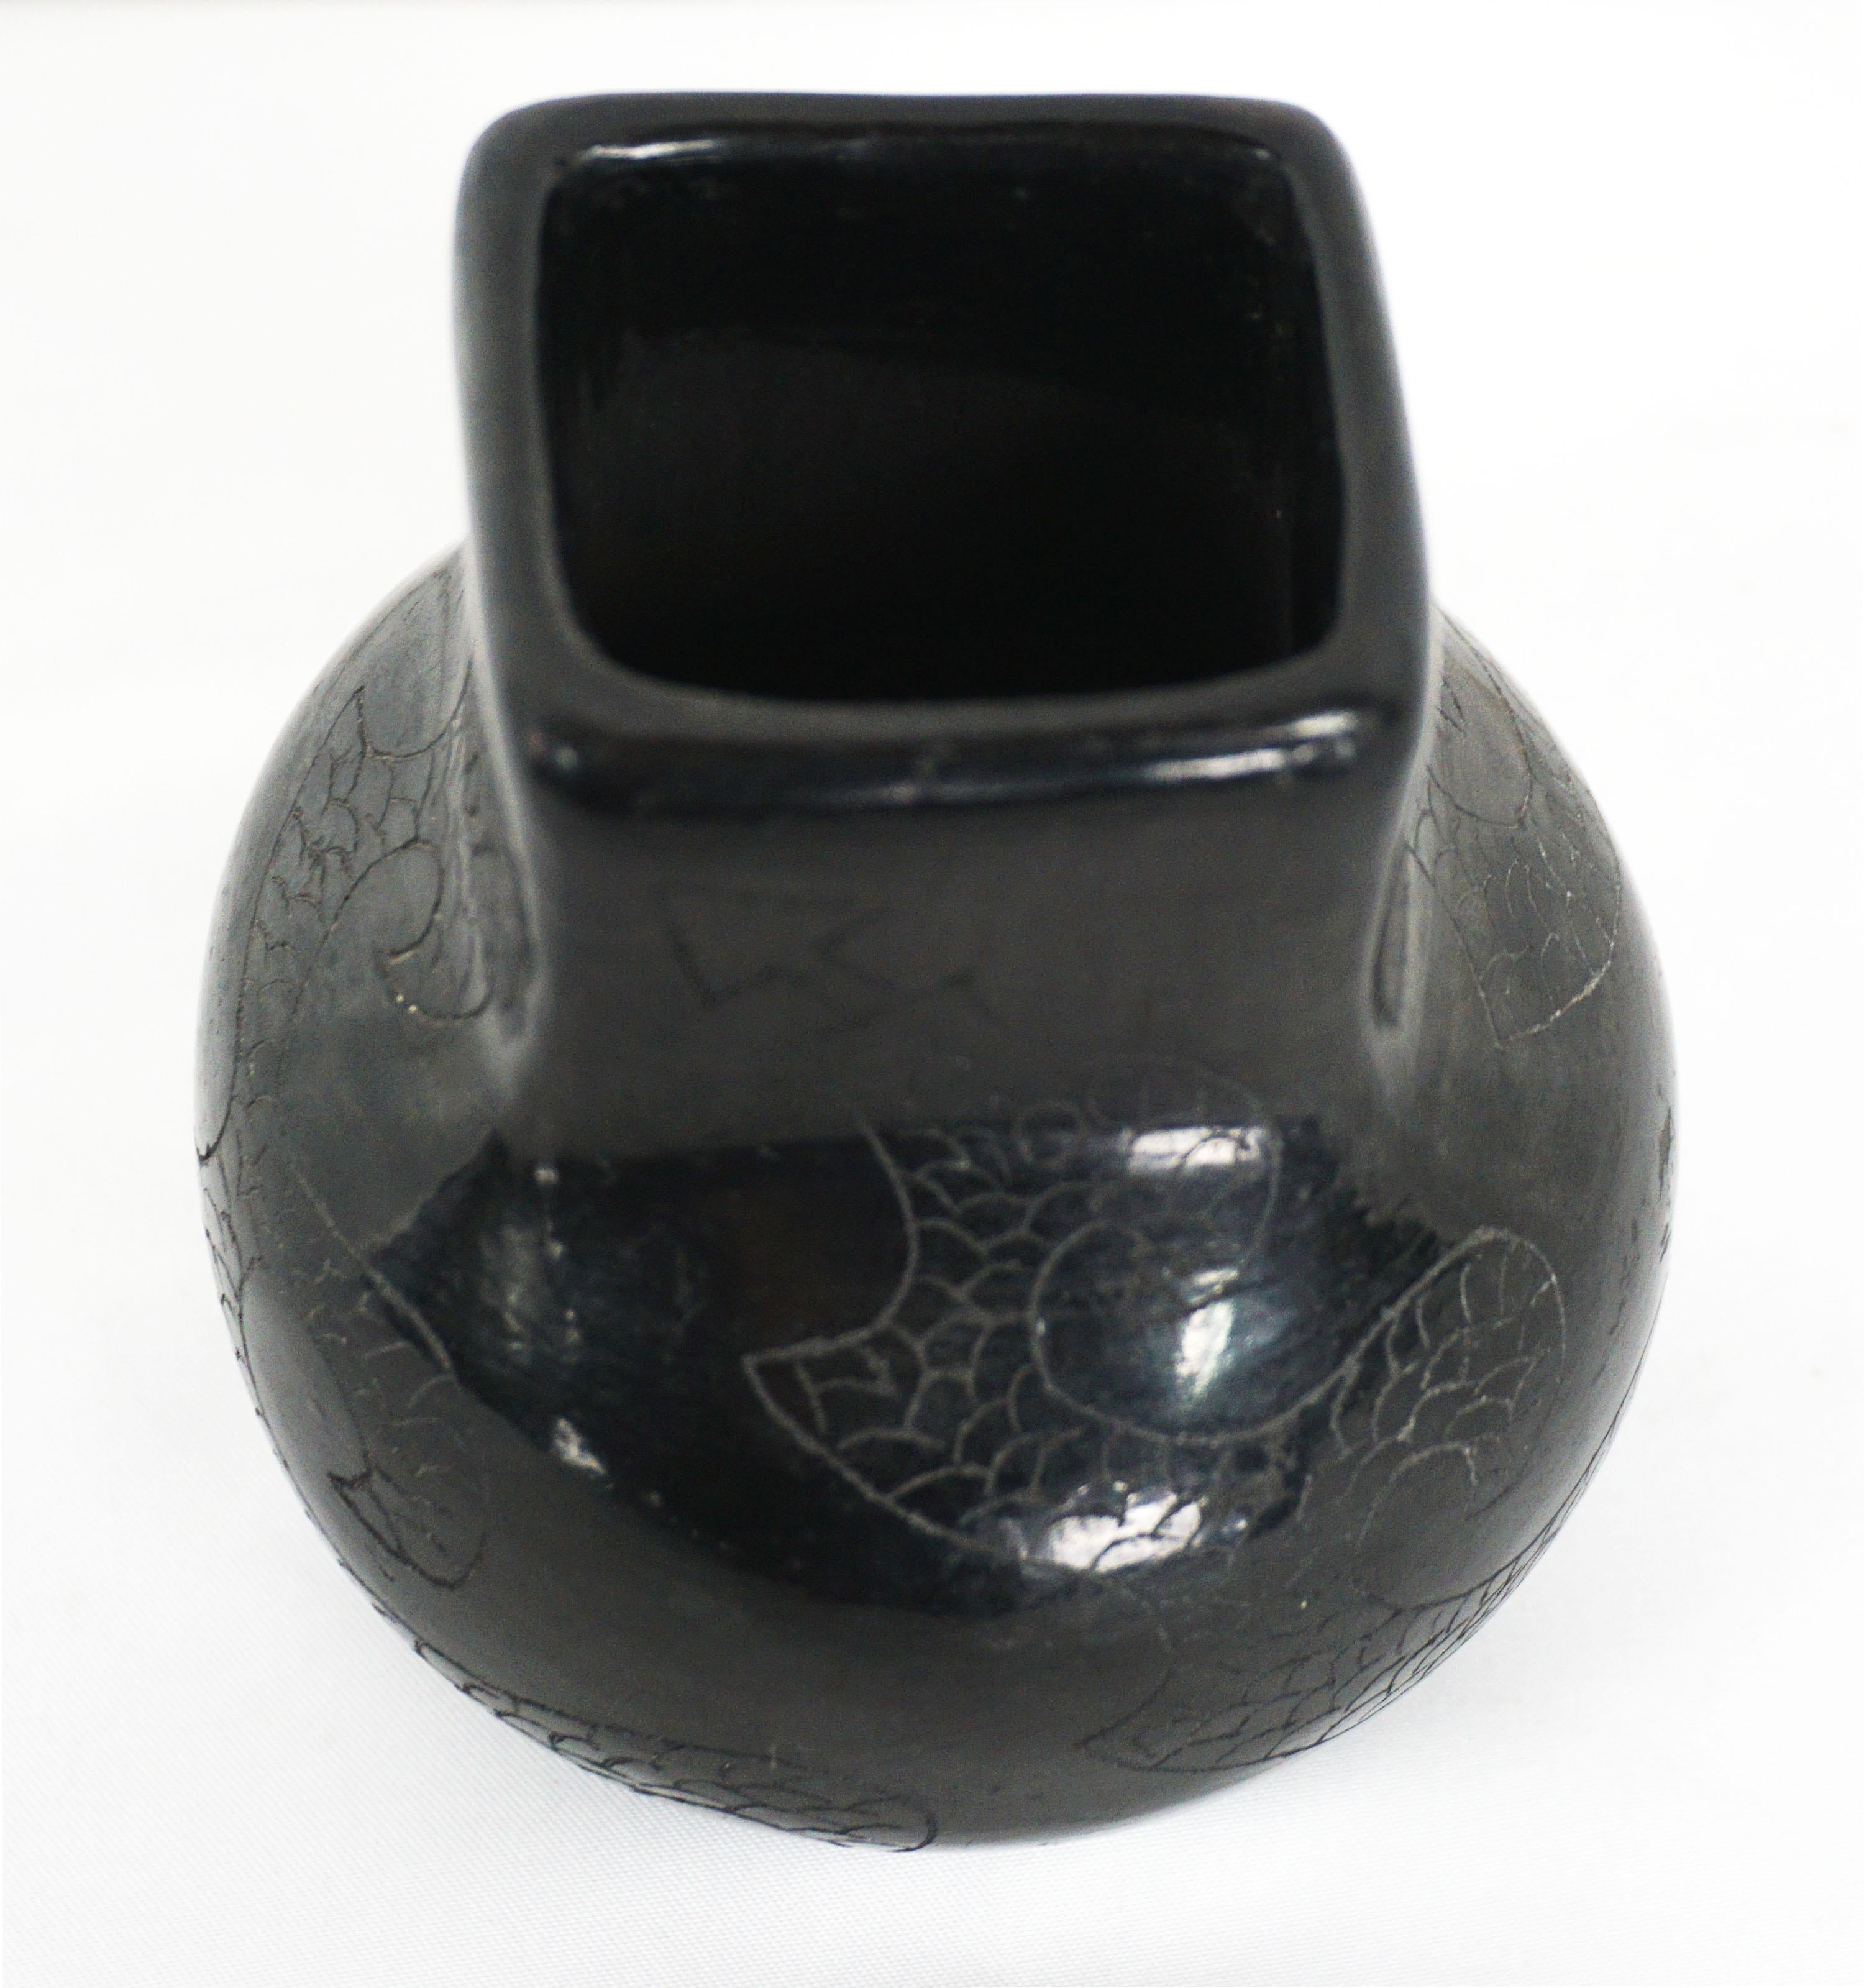 Magnifique petit vase/récipient en céramique noire à motif de serpent (